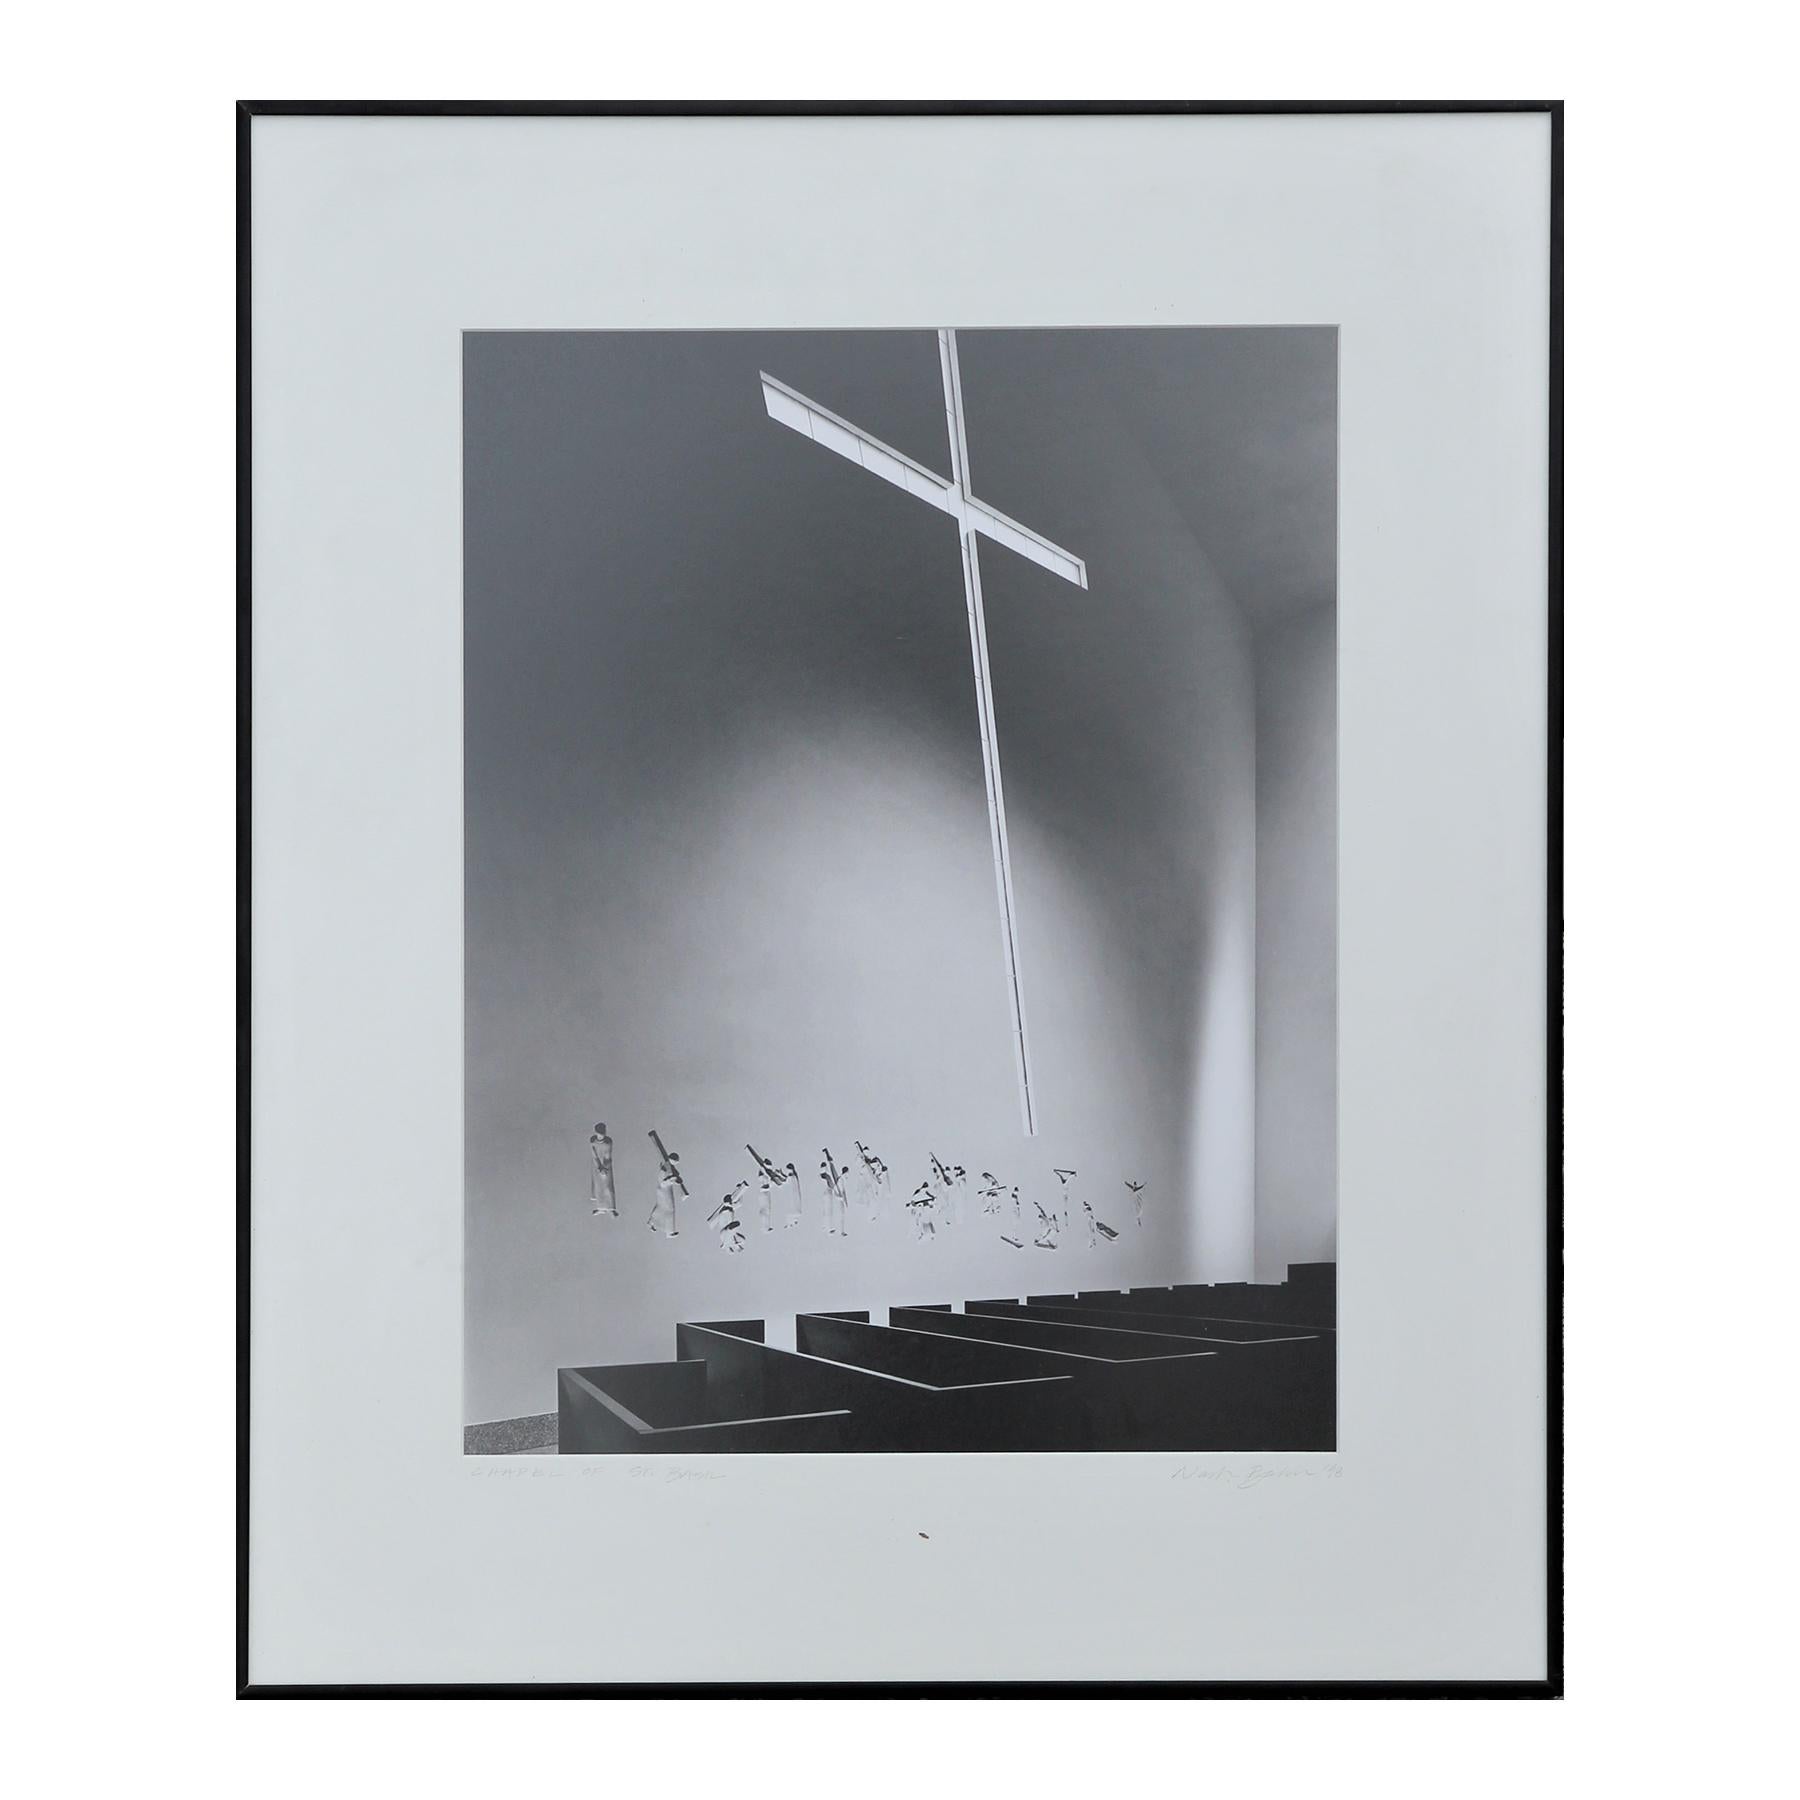 Photographie en noir et blanc « Chapel of St. Basil » représentant une croix d'intérieur d'une église